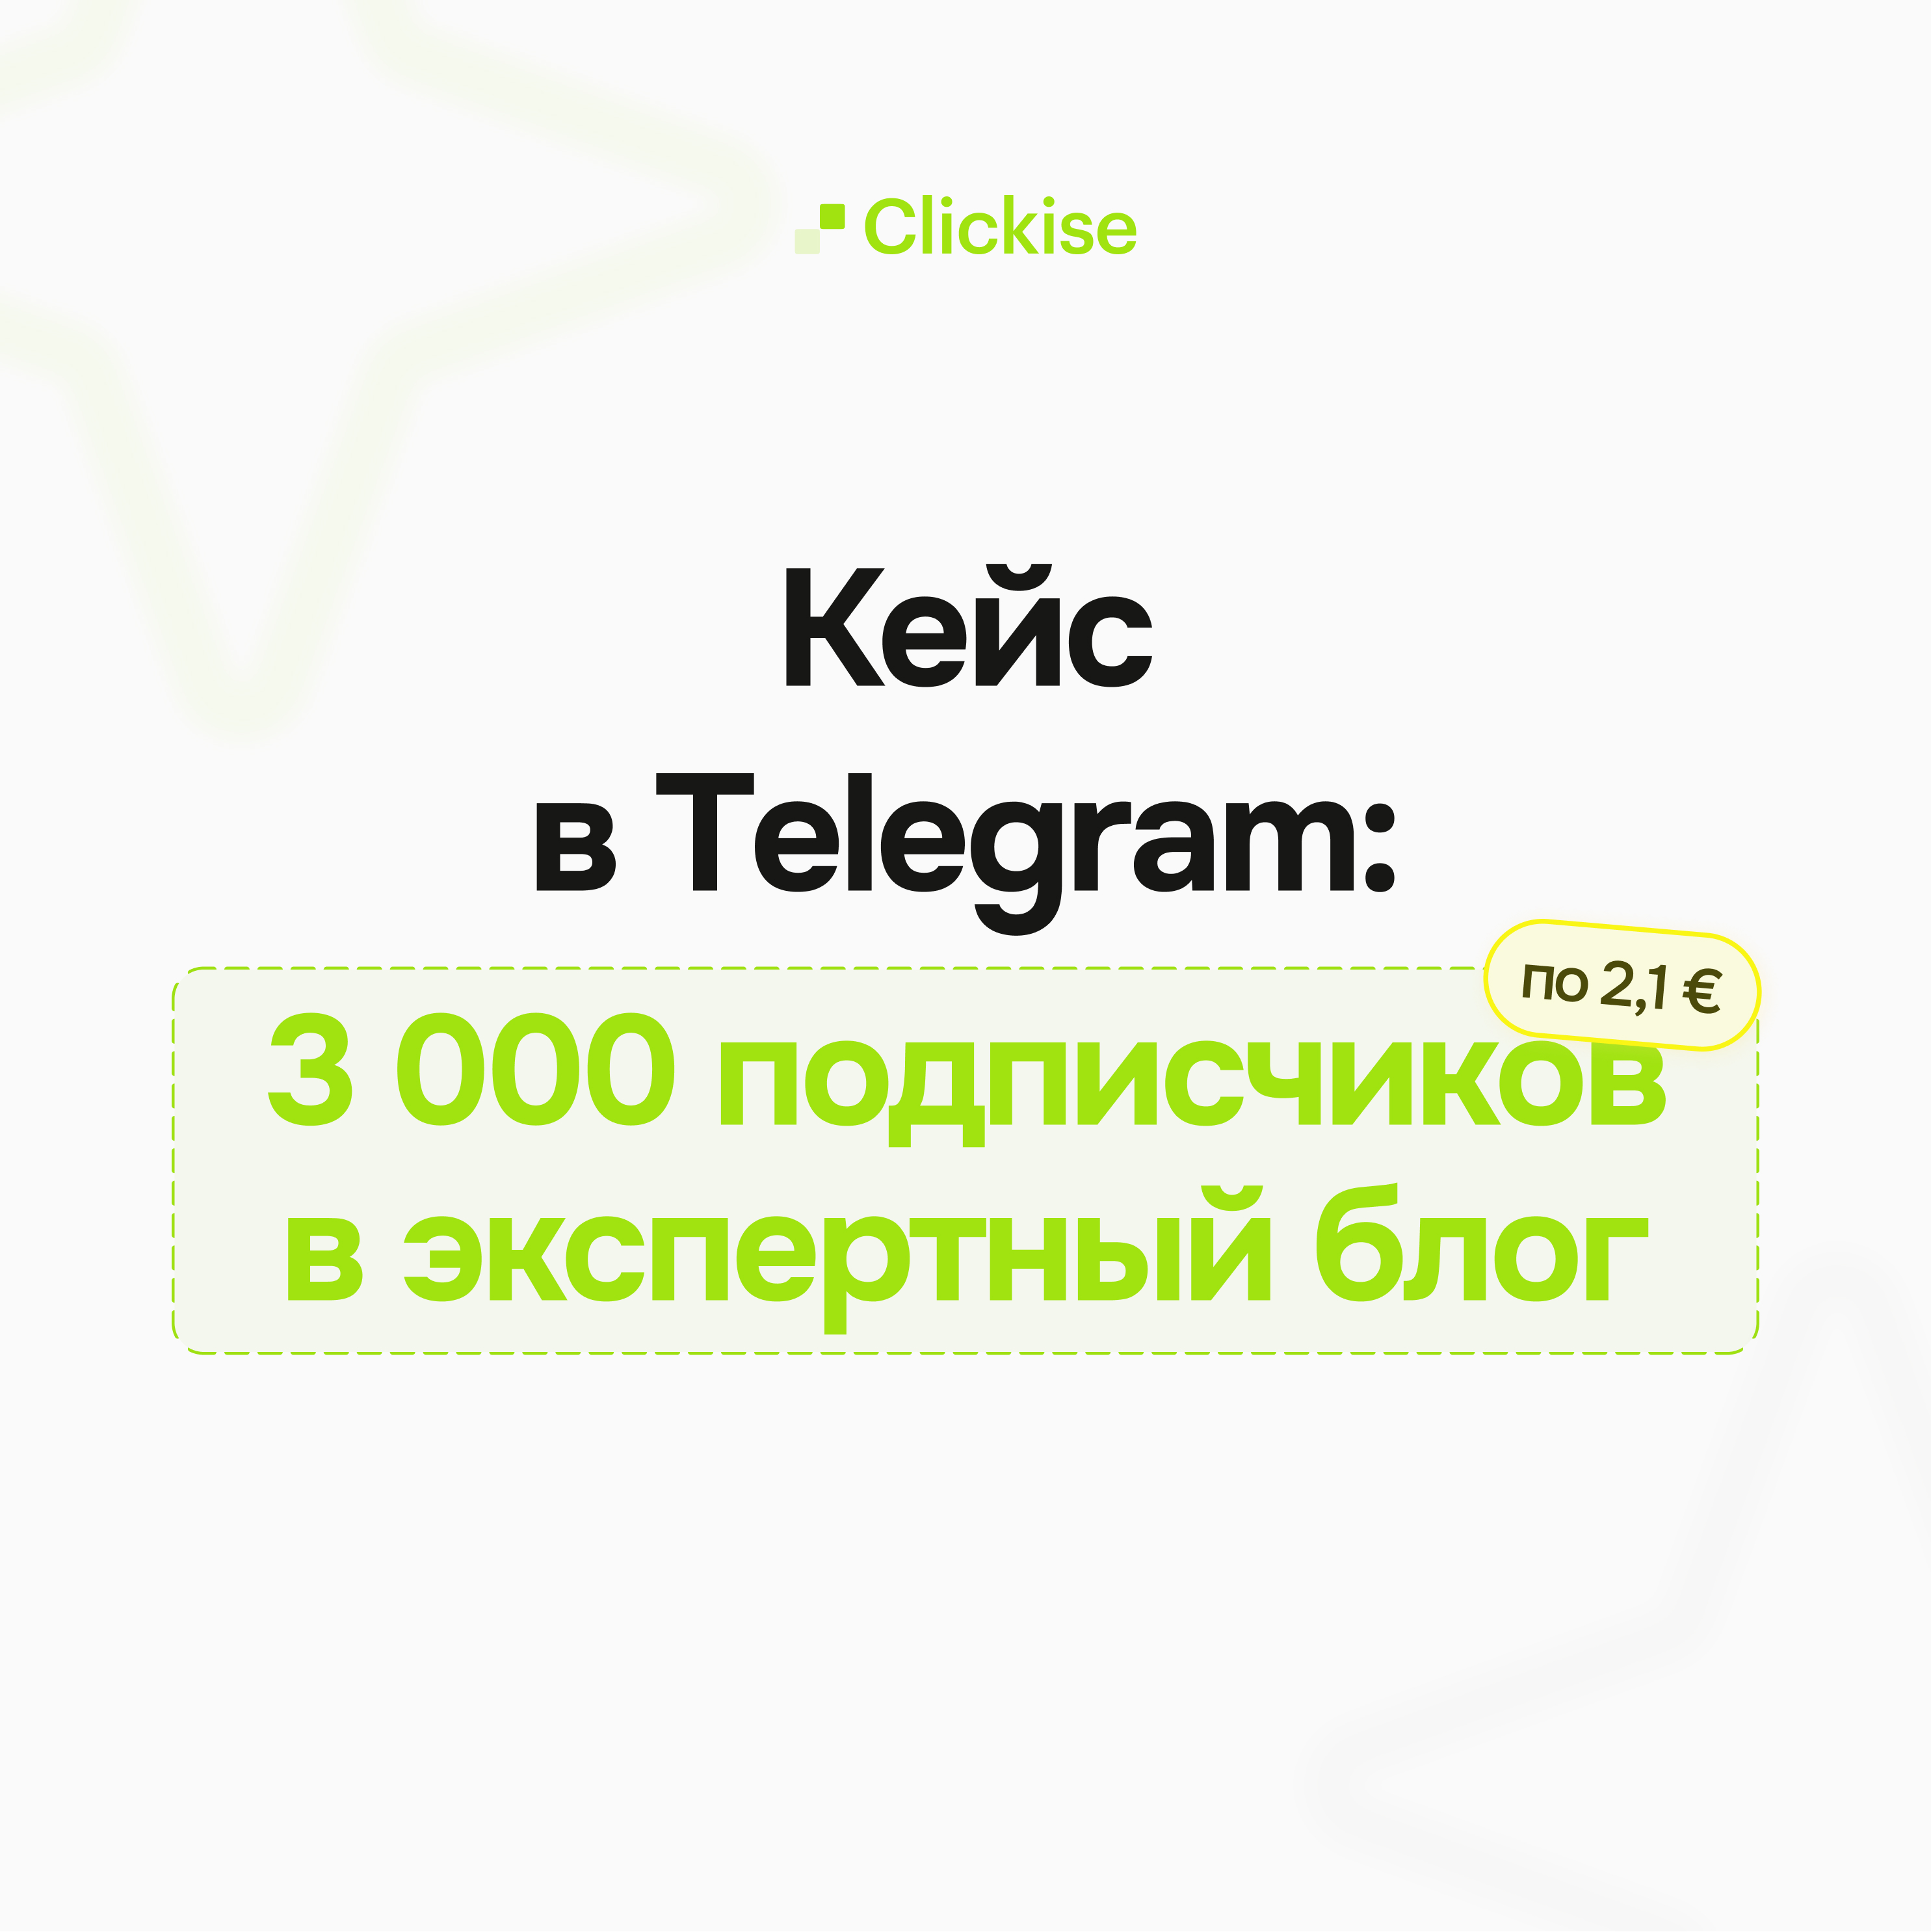 Эксперт в сфере консалтинга: 3 тысячи подписчиков по 2,1€ на канал в Telegram